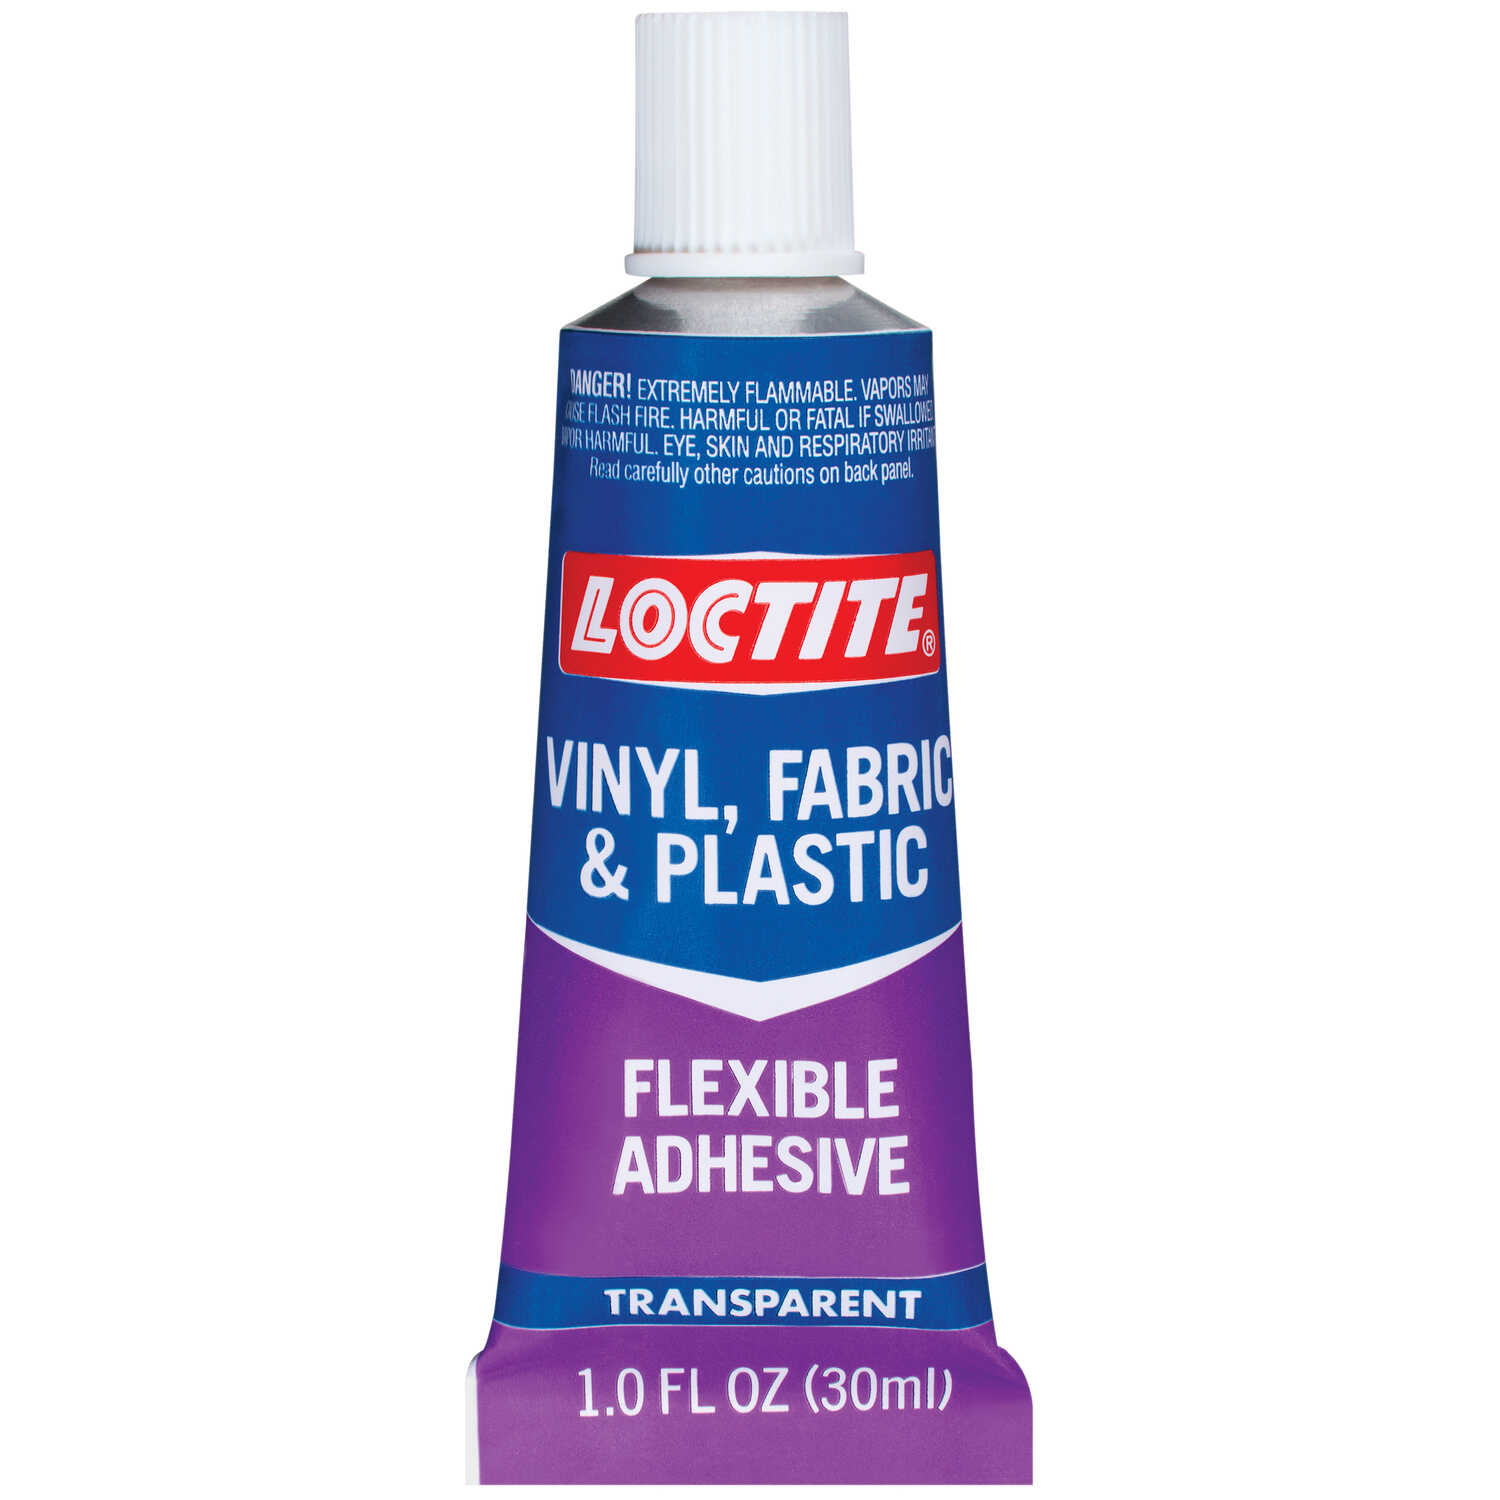 Loctite Vinyl, Fabric & Plastic High Strength Paste